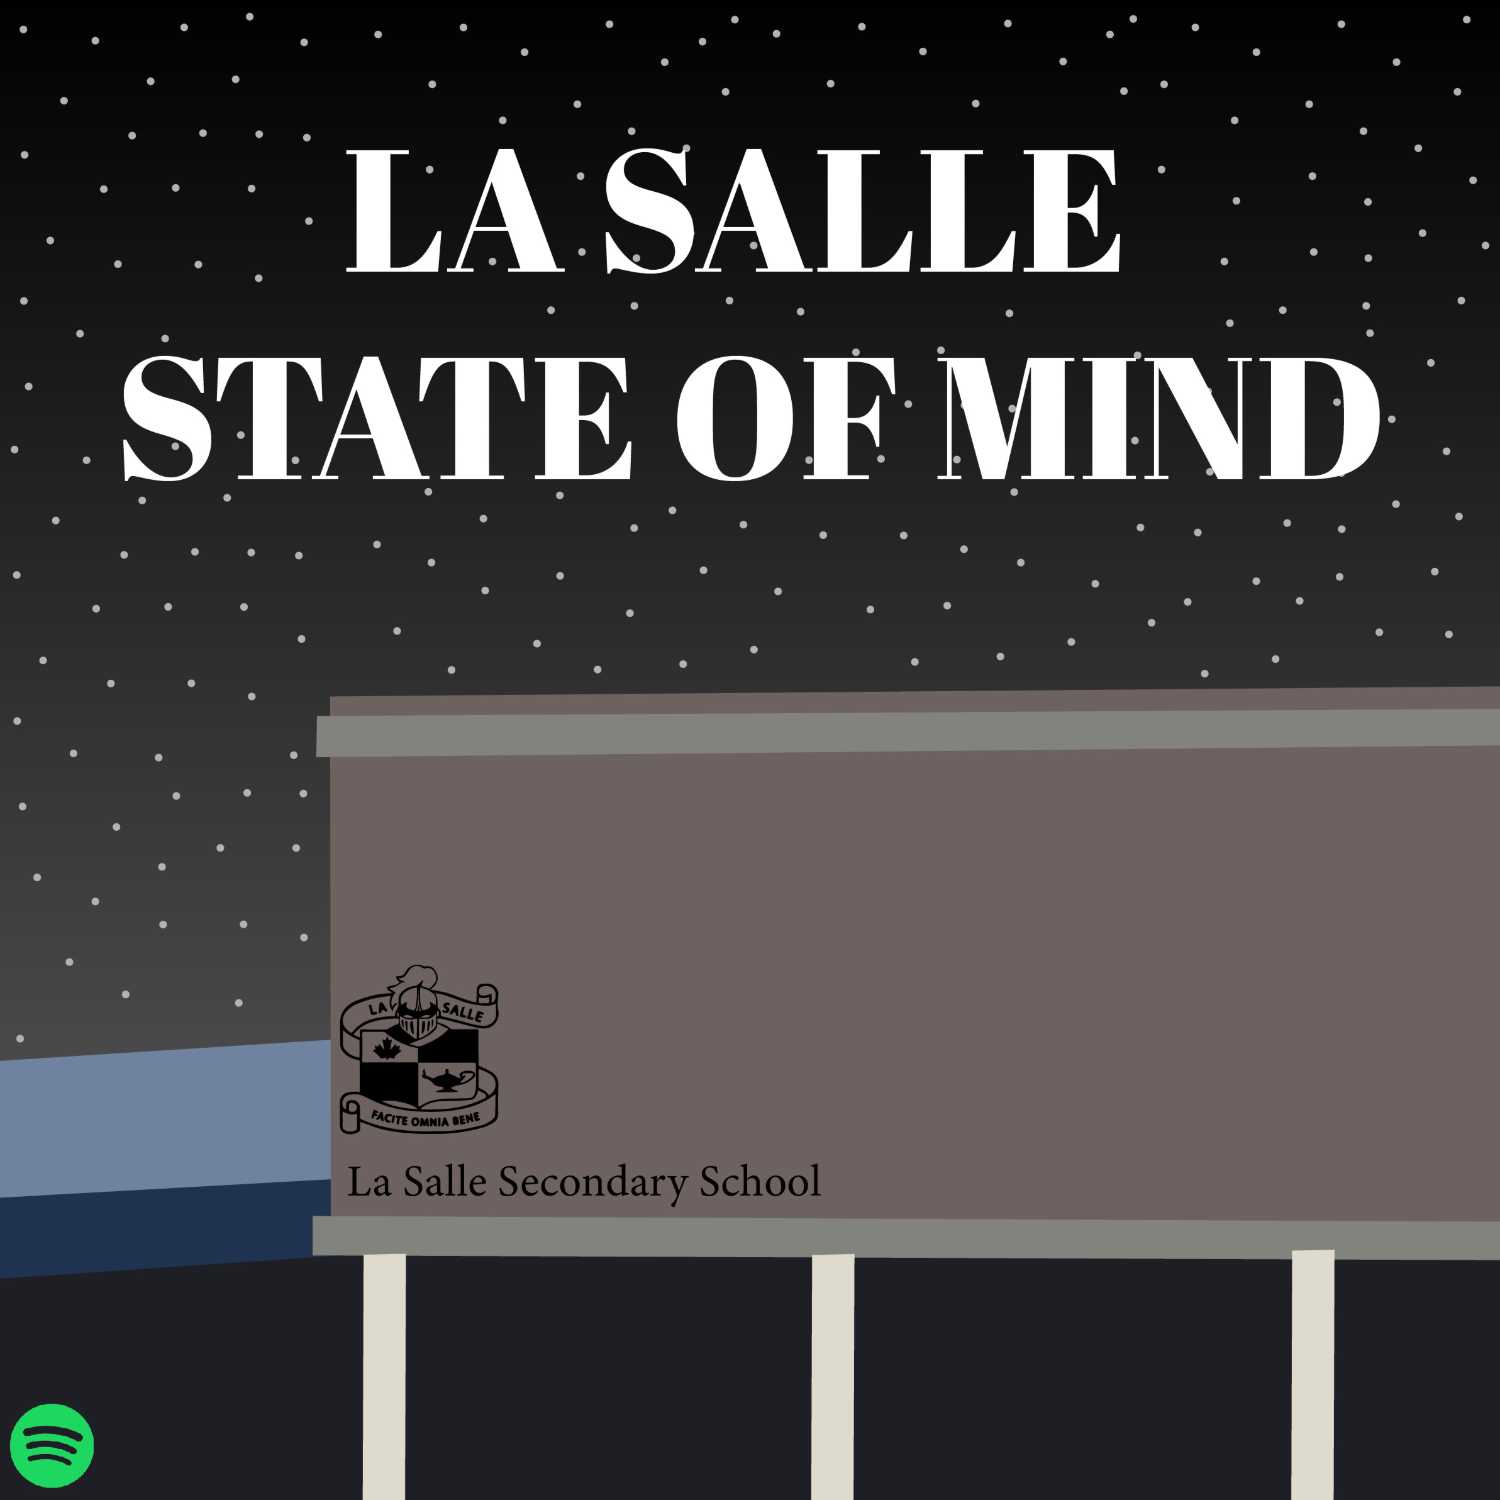 La Salle State of Mind